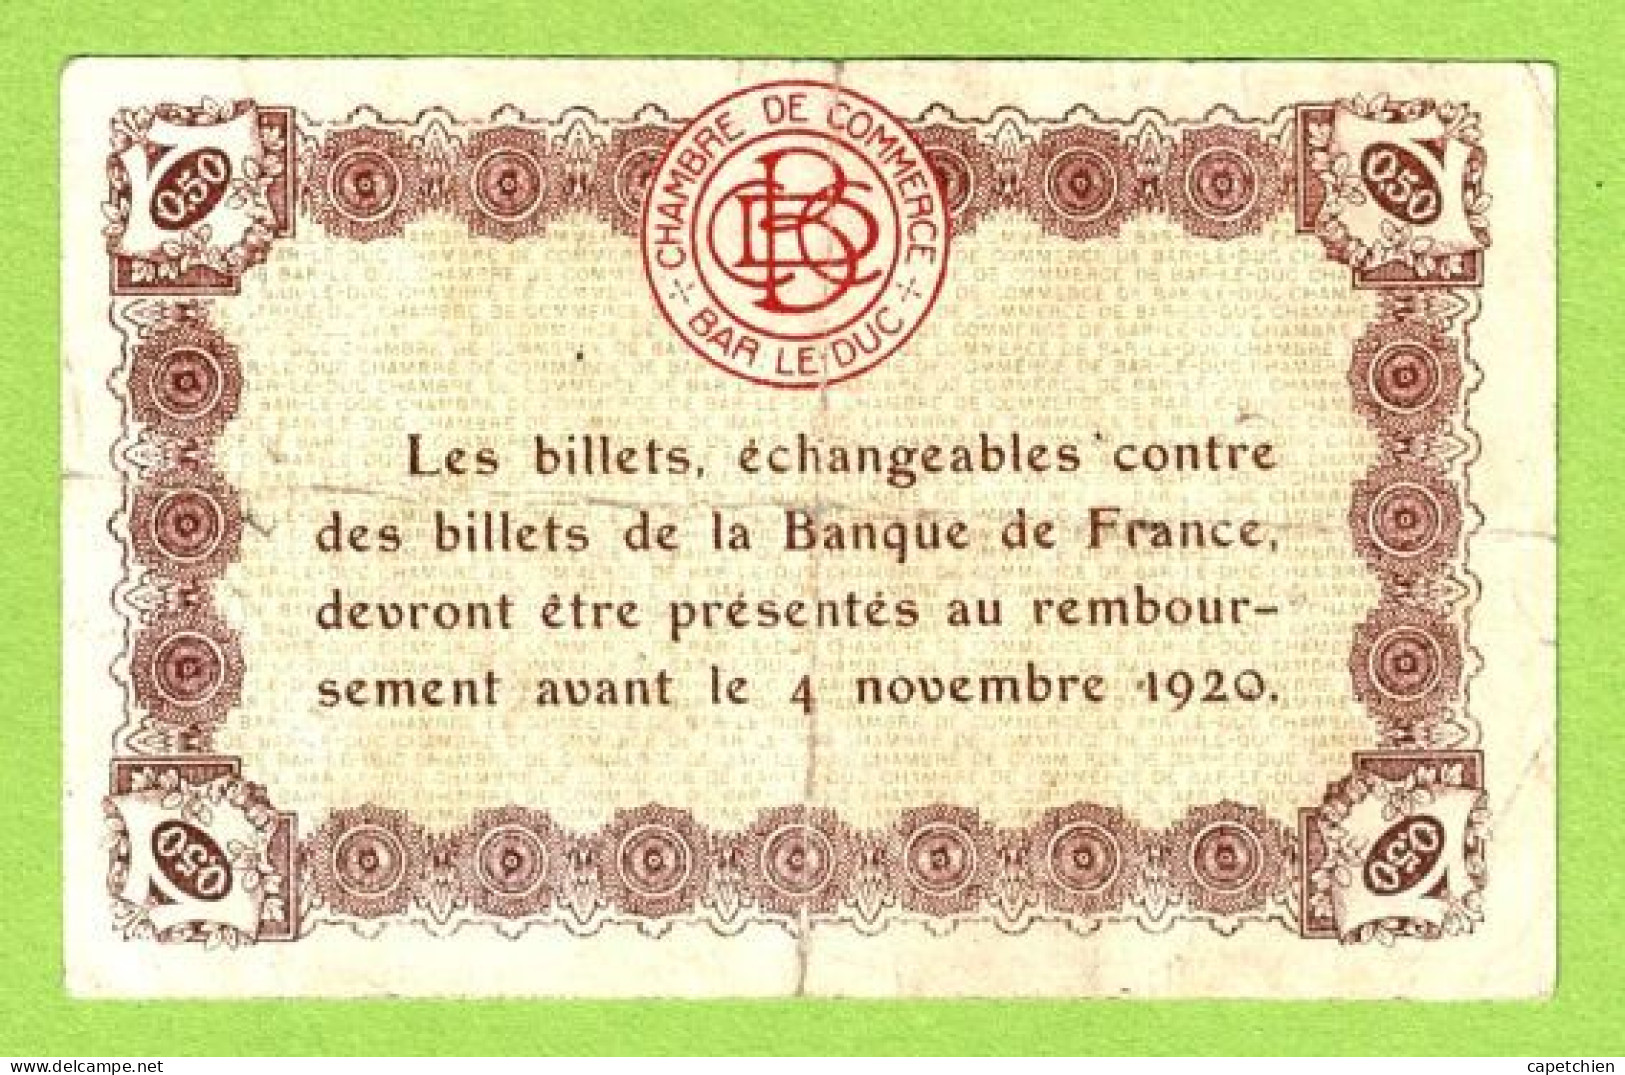 FRANCE / CHAMBRE DE COMMERCE / BAR LE DUC / 50 CENTIMES /  2 AOUT 1917  / 3ème EMISSION / N° 47255 - Chamber Of Commerce